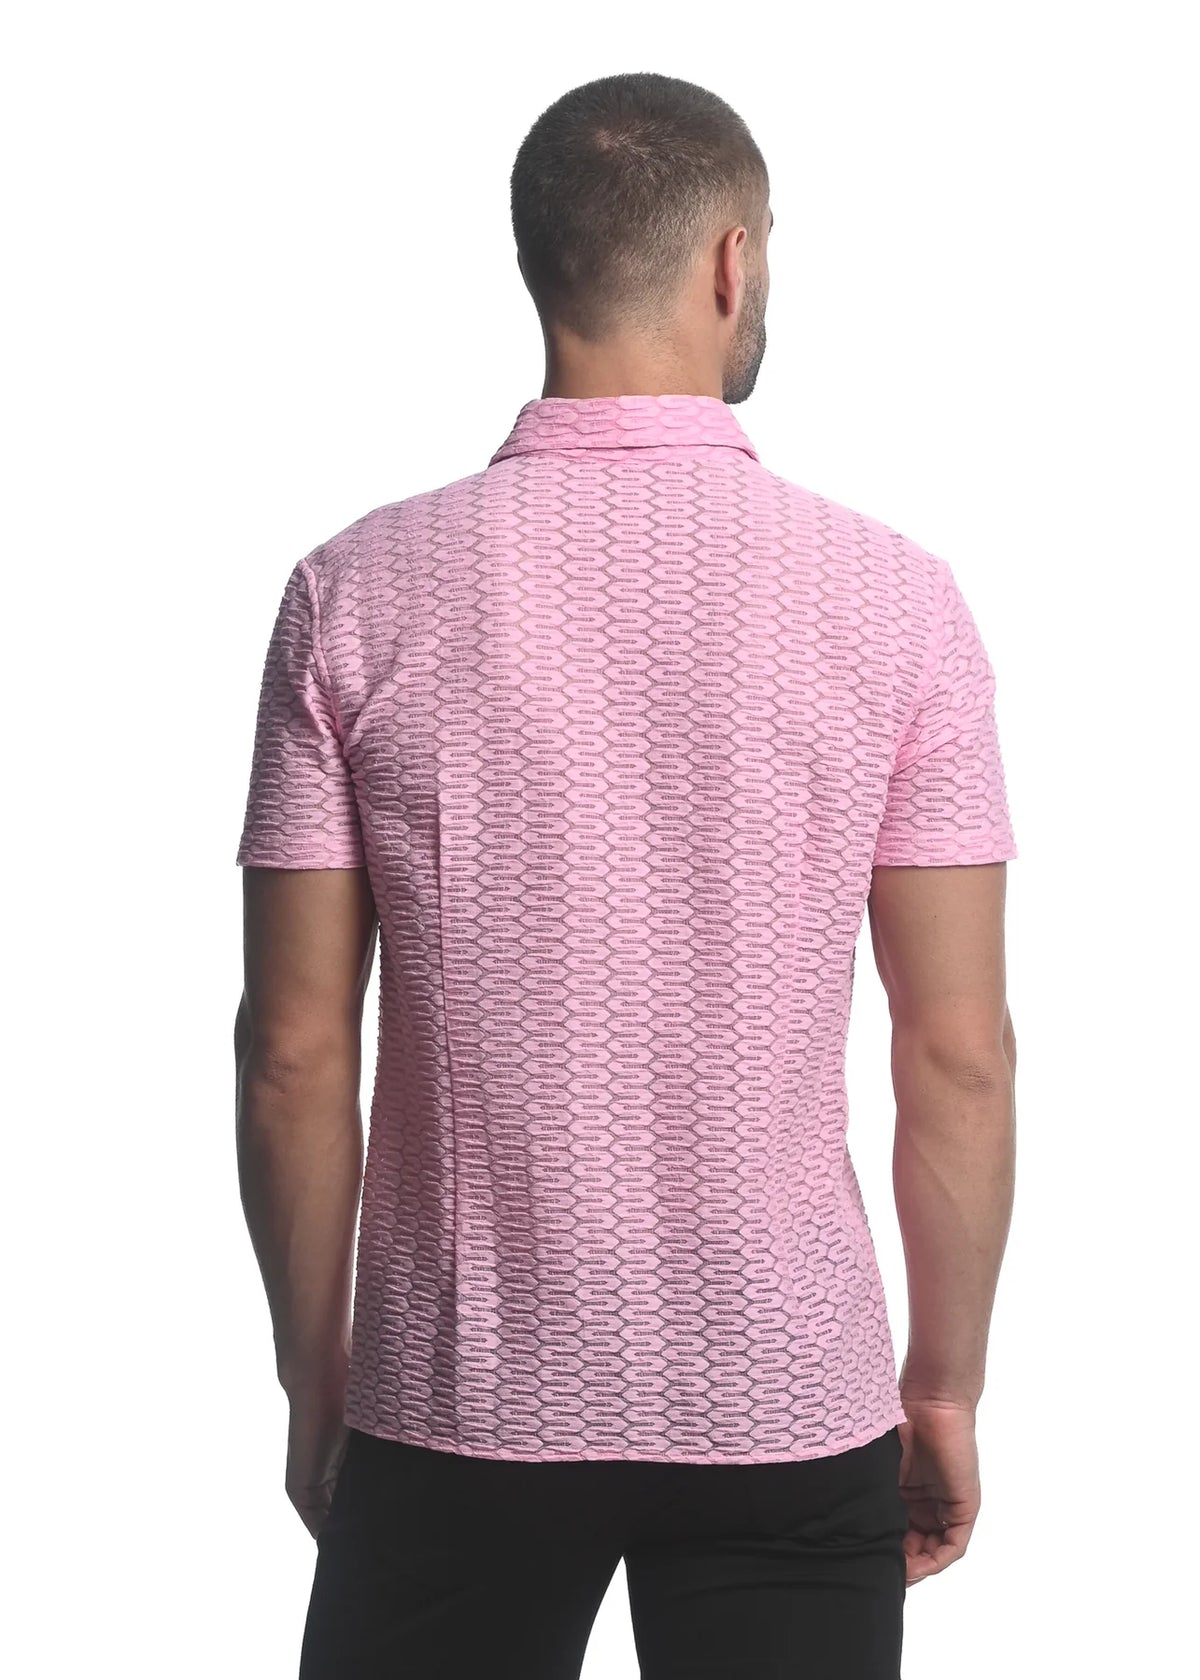 Stretch Knit Lace Gossamer Shirt (Dusty Pink)